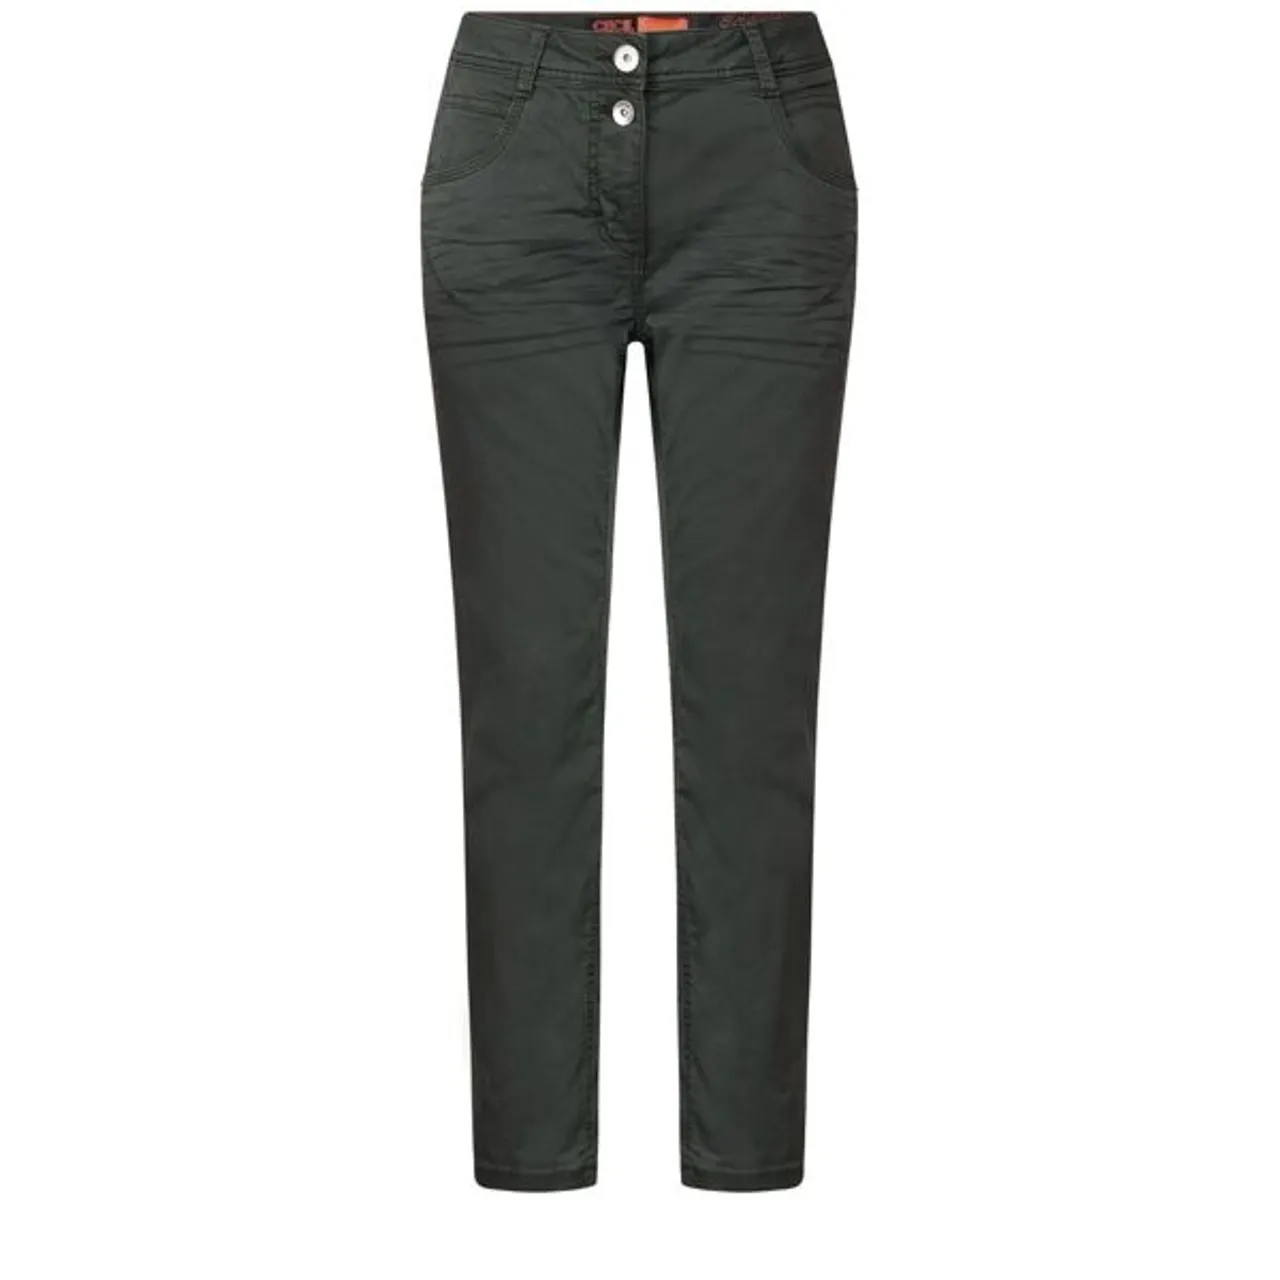 Jerseyhose CECIL Gr. 31, Länge 26, grün (strong khaki) Damen Hosen Jerseyhosen mit vielseitigem Design